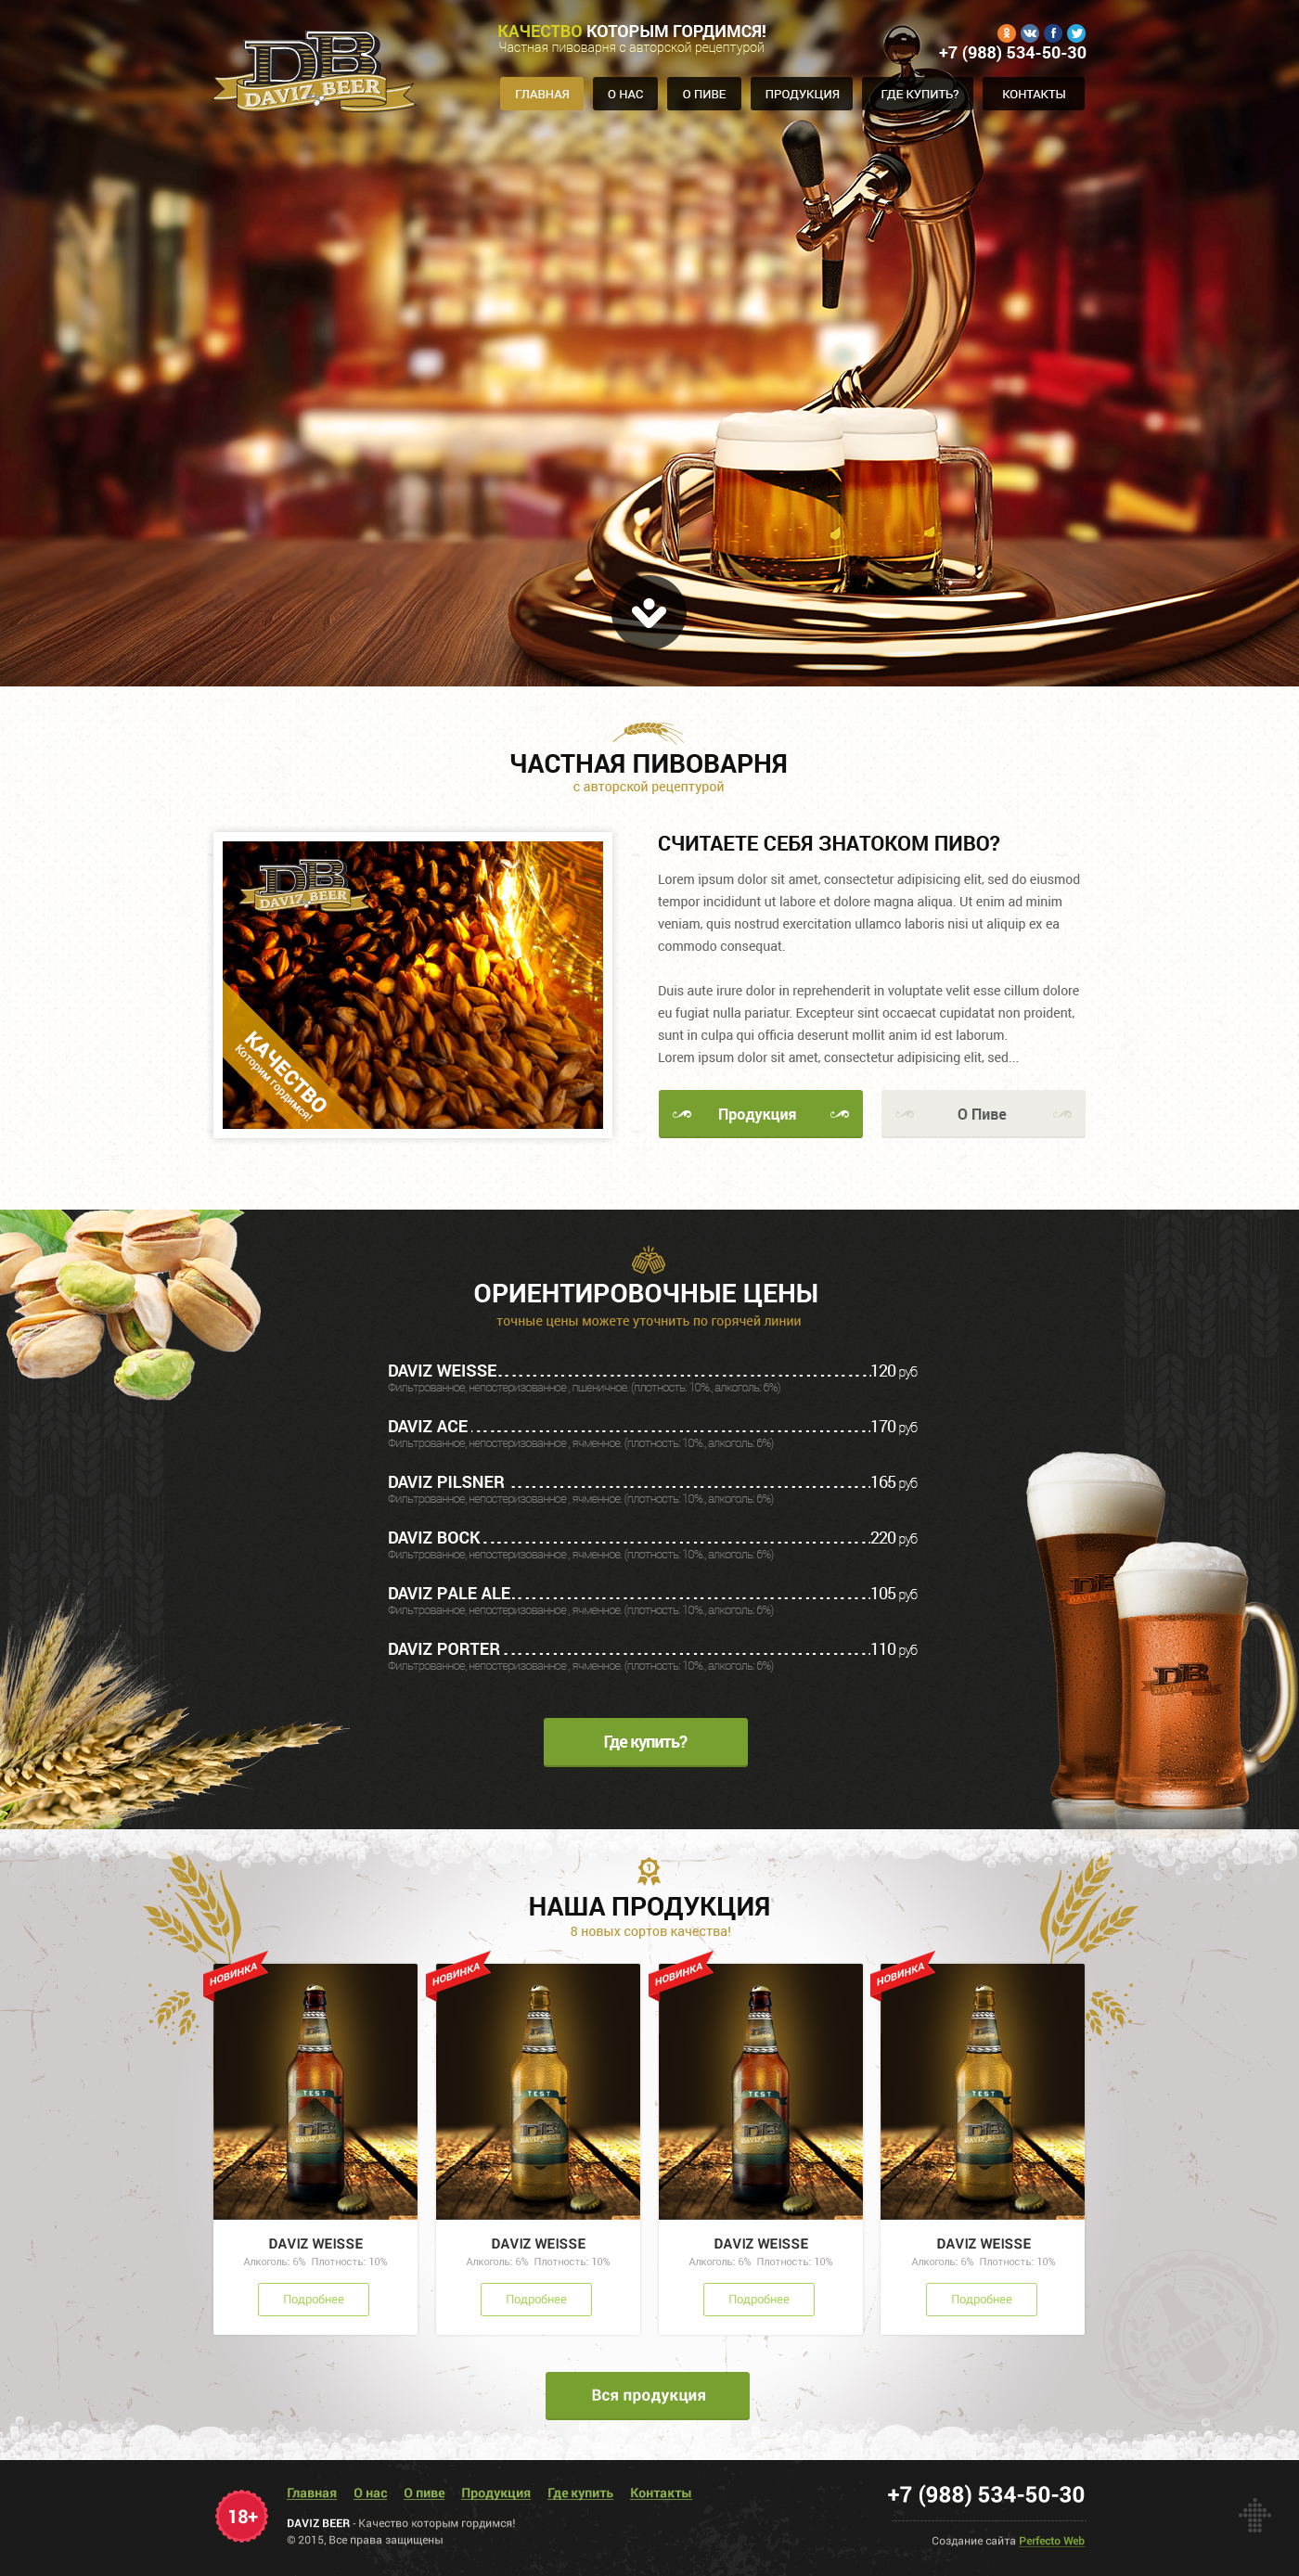 Daviz Beer №2- Home page